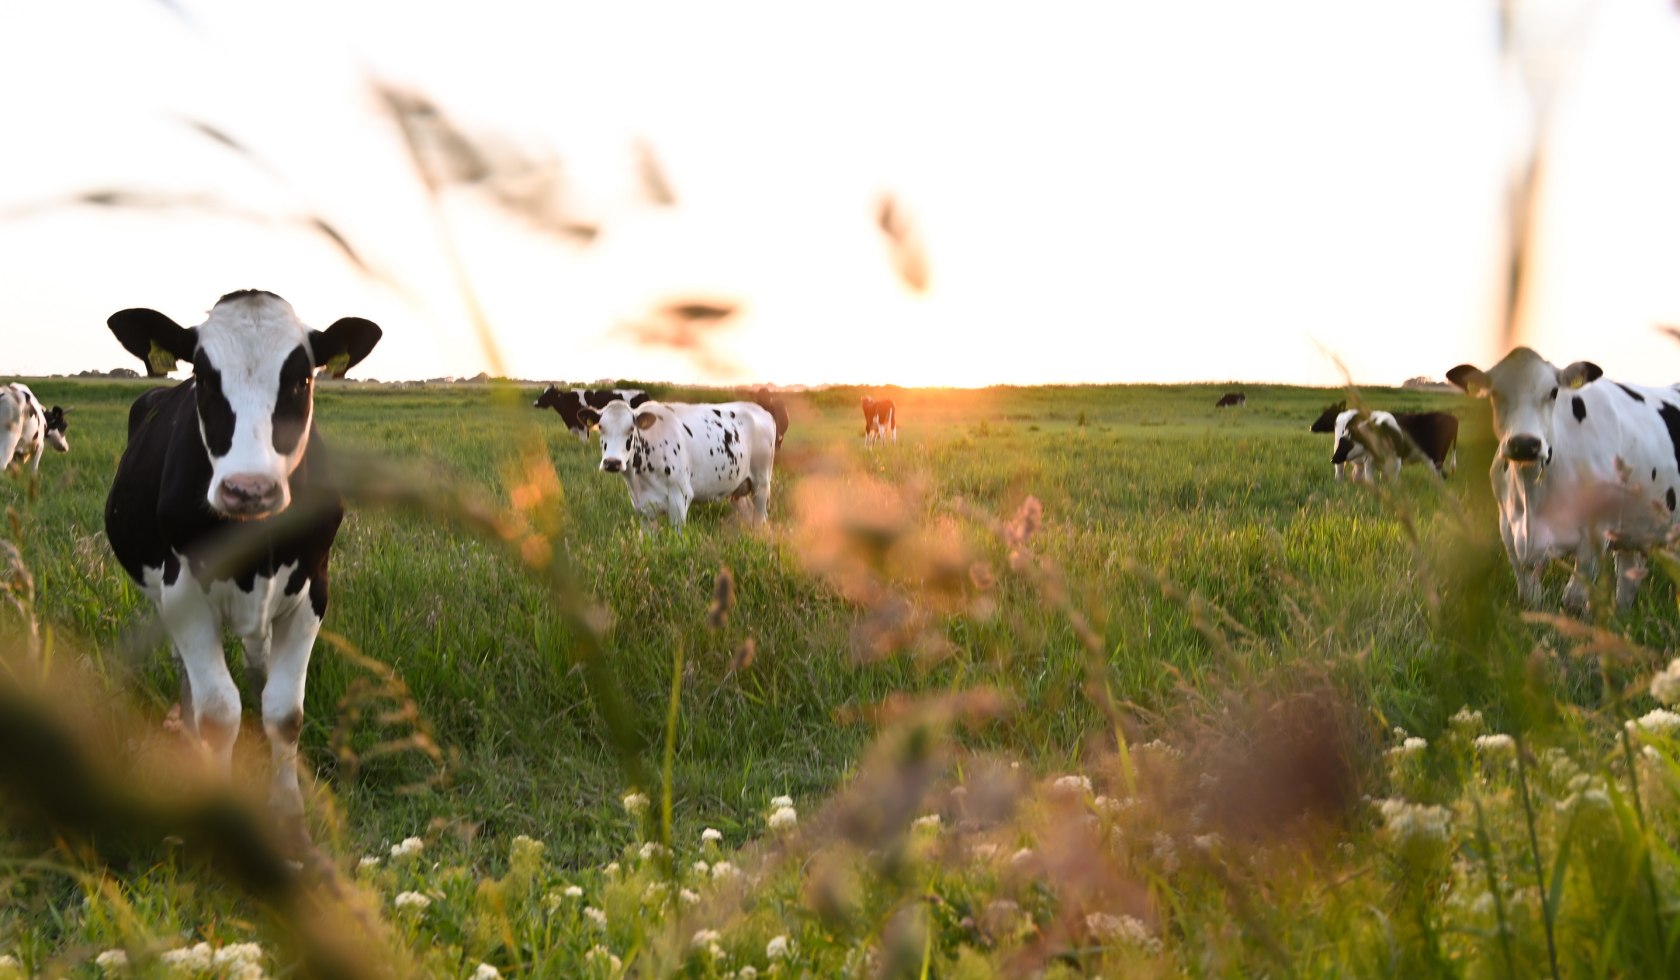 Cows on a meadow in Leer, © Stadt Leer / L. Klemmer